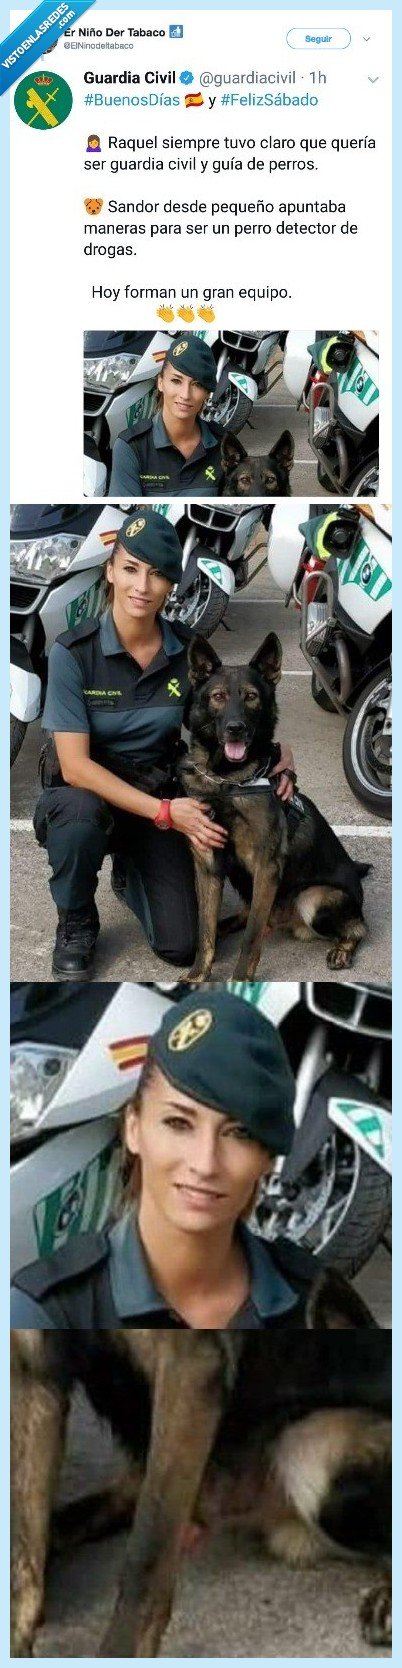 perro,guardia civil,raquel